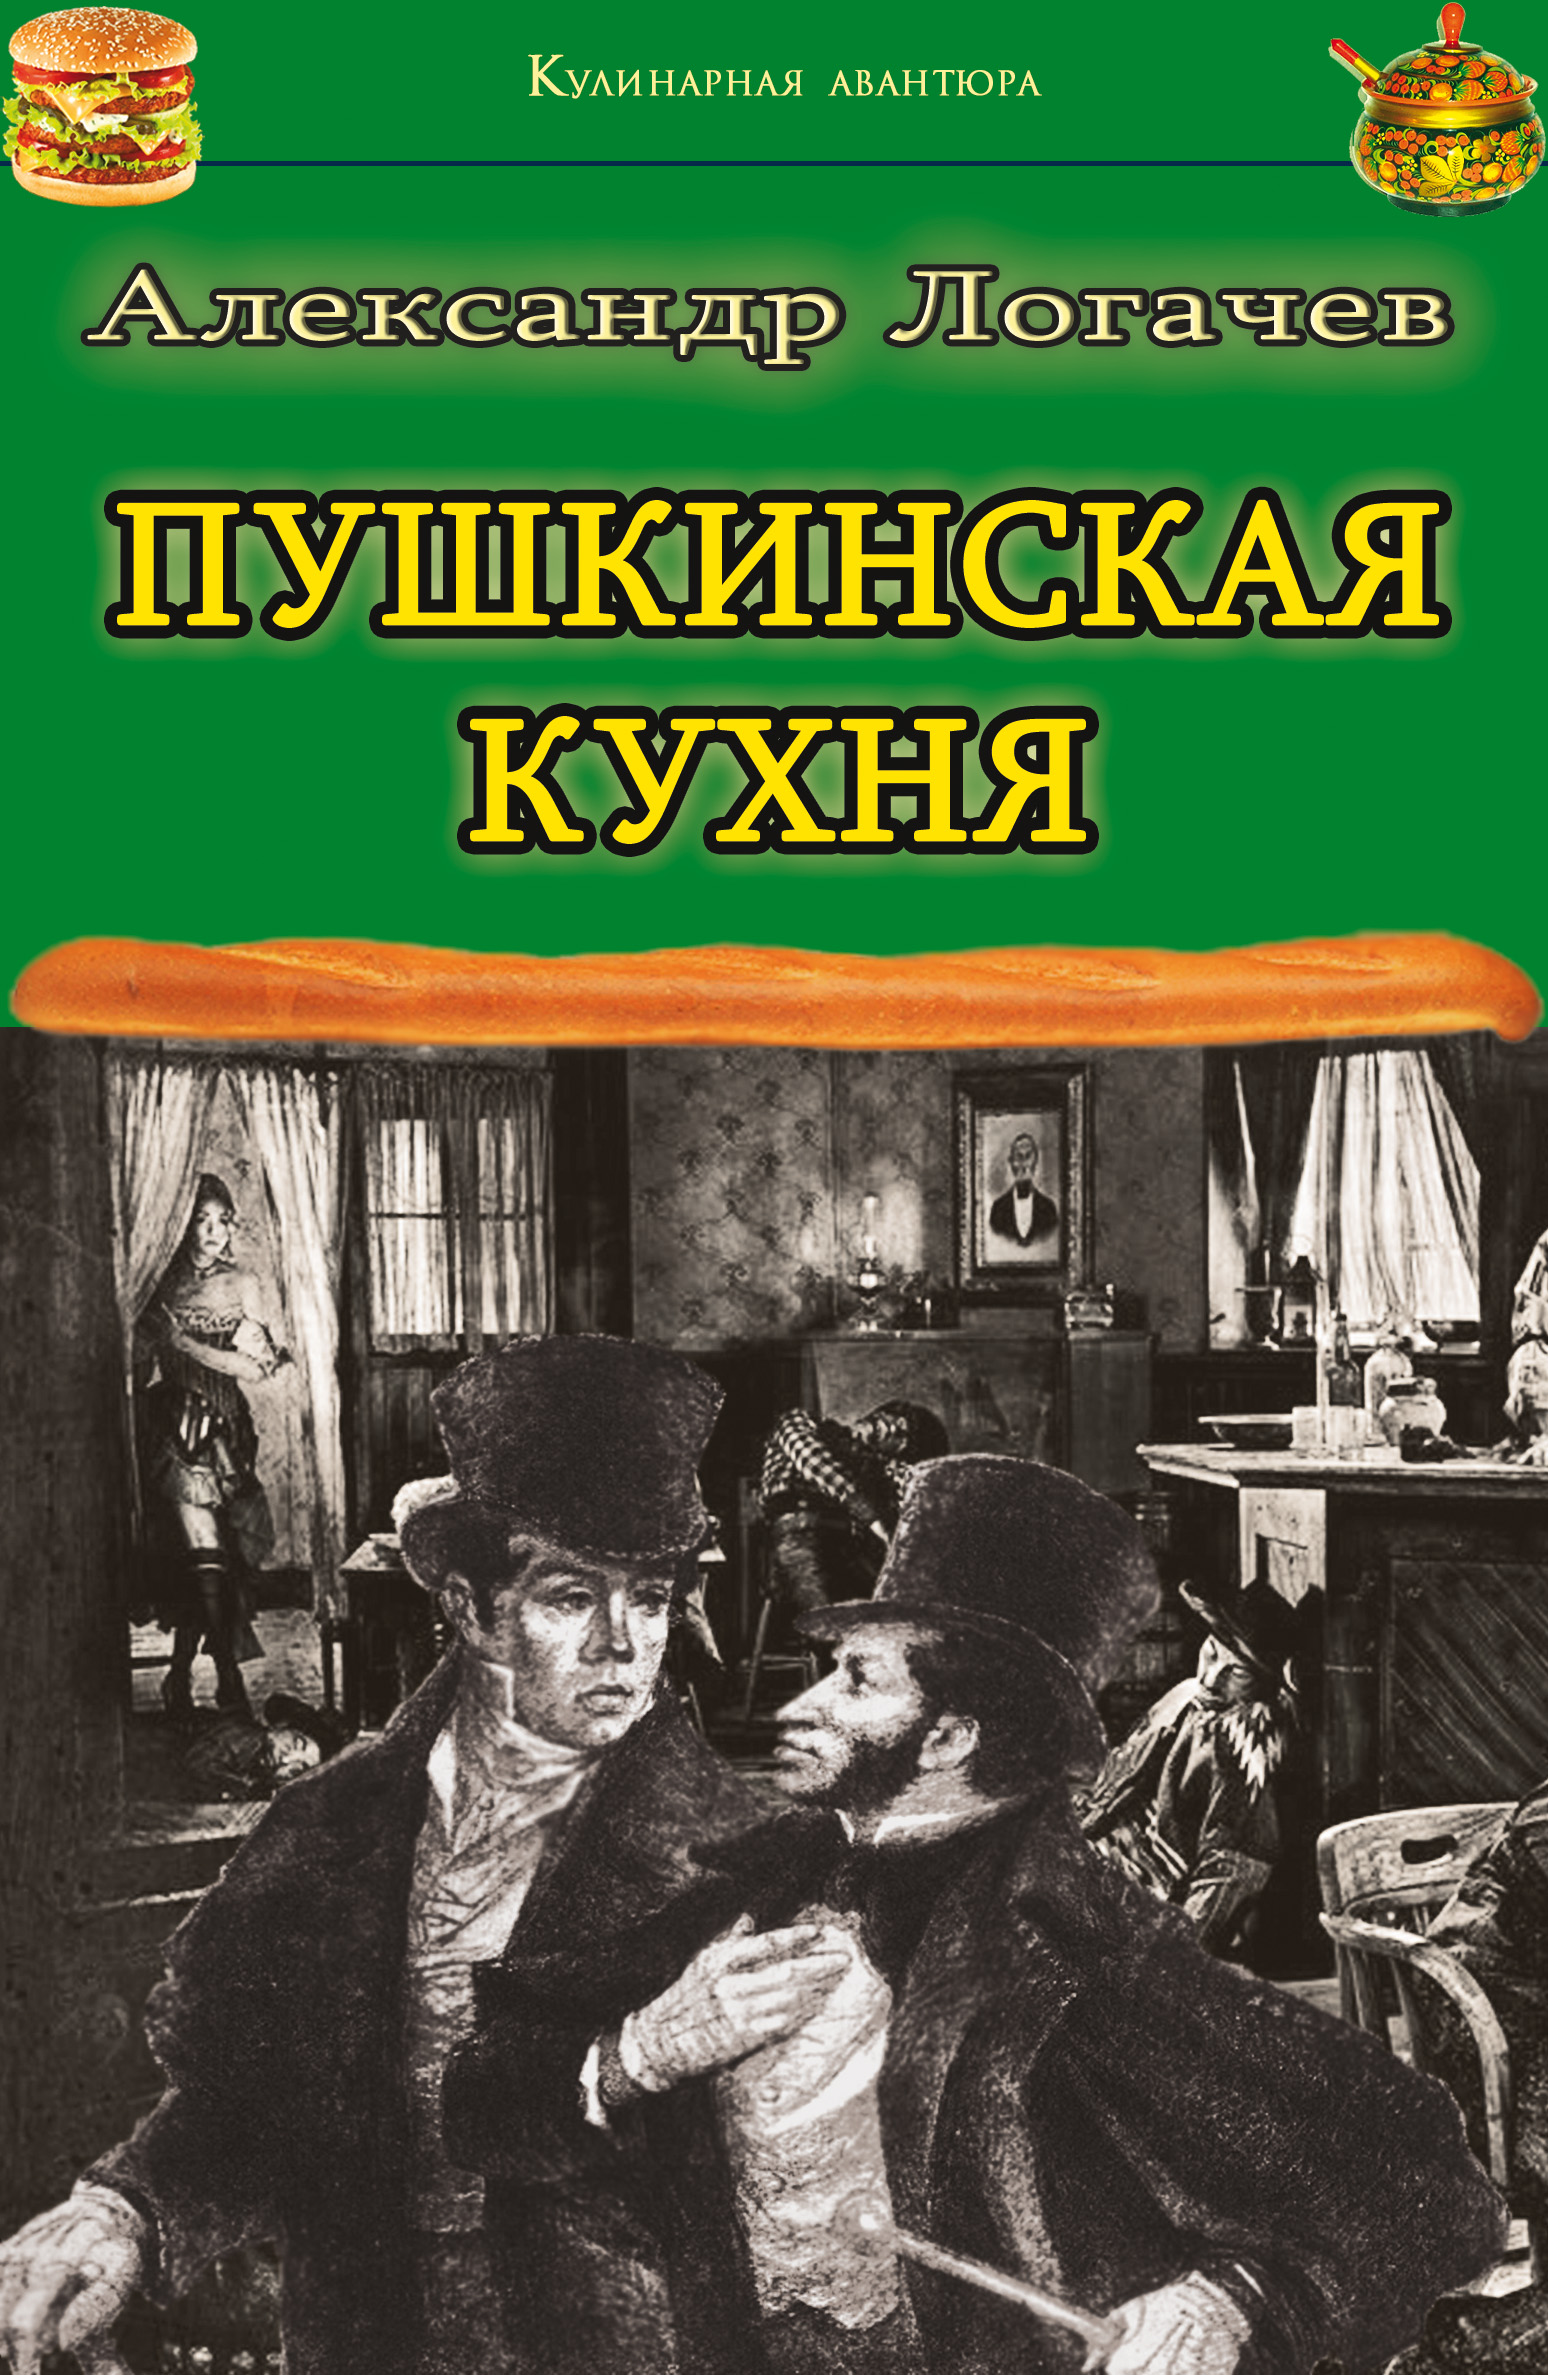 Книга Пушкинская кухня из серии , созданная Александр Логачев, может относится к жанру Кулинария, Юмор: прочее. Стоимость электронной книги Пушкинская кухня с идентификатором 22055330 составляет 149.00 руб.